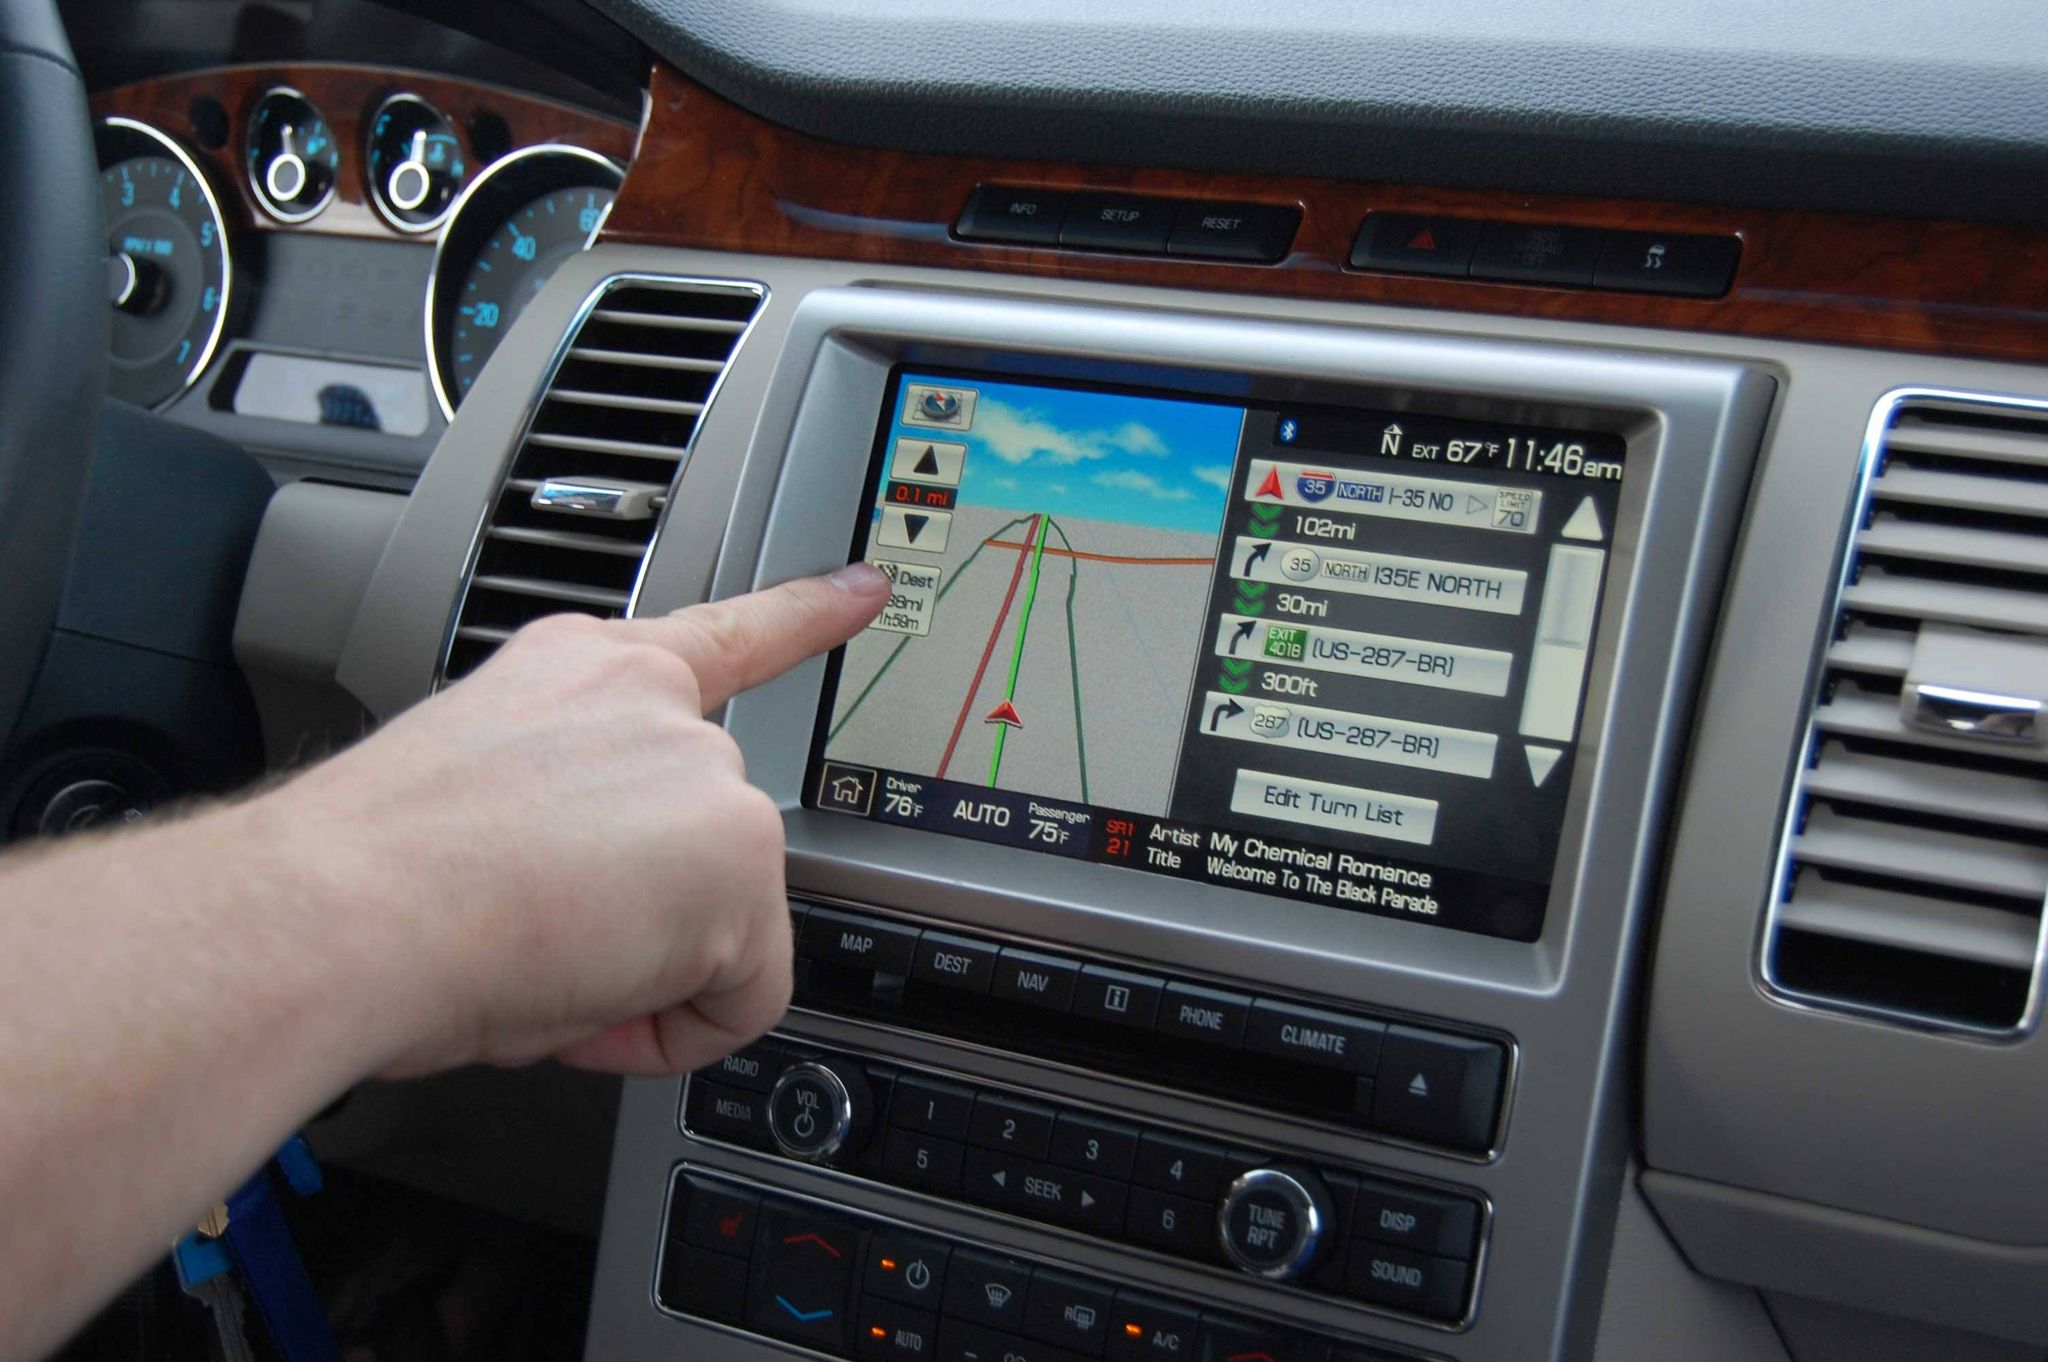 تحديث شاشة السيارة اندرويد بالخطوات وضبطها وأهم علامات تظهر على شاشة السيارة